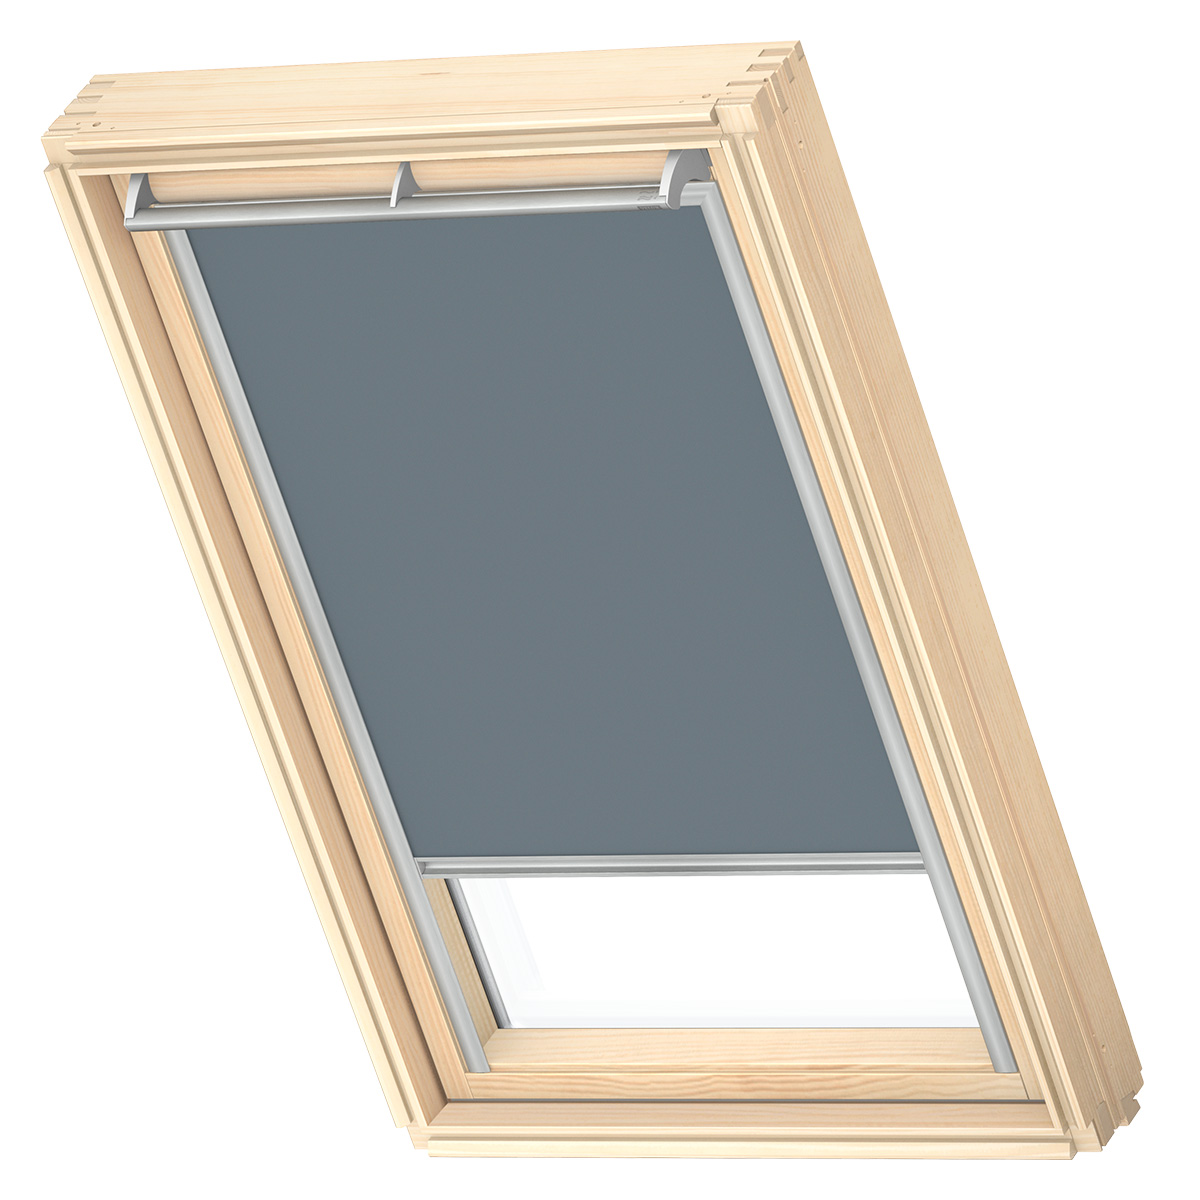 VELUX Original-Verdunkelungsrollo für VELUX Dachfenster, Silberne  Seitenschienen | eBay